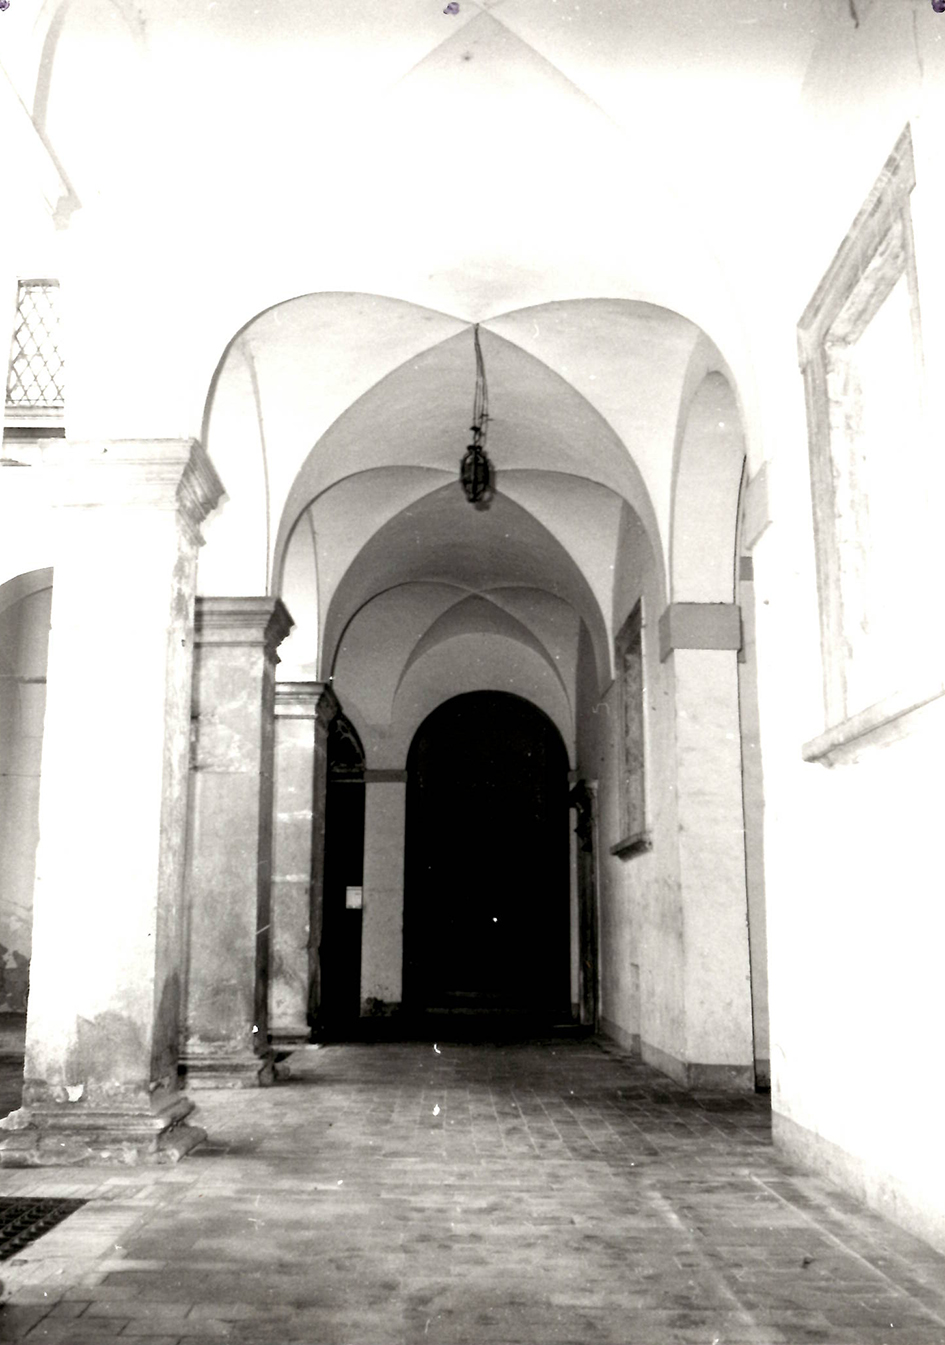 Palazzo Margarucci (palazzo, nobiliare) - San Severino Marche (MC) 